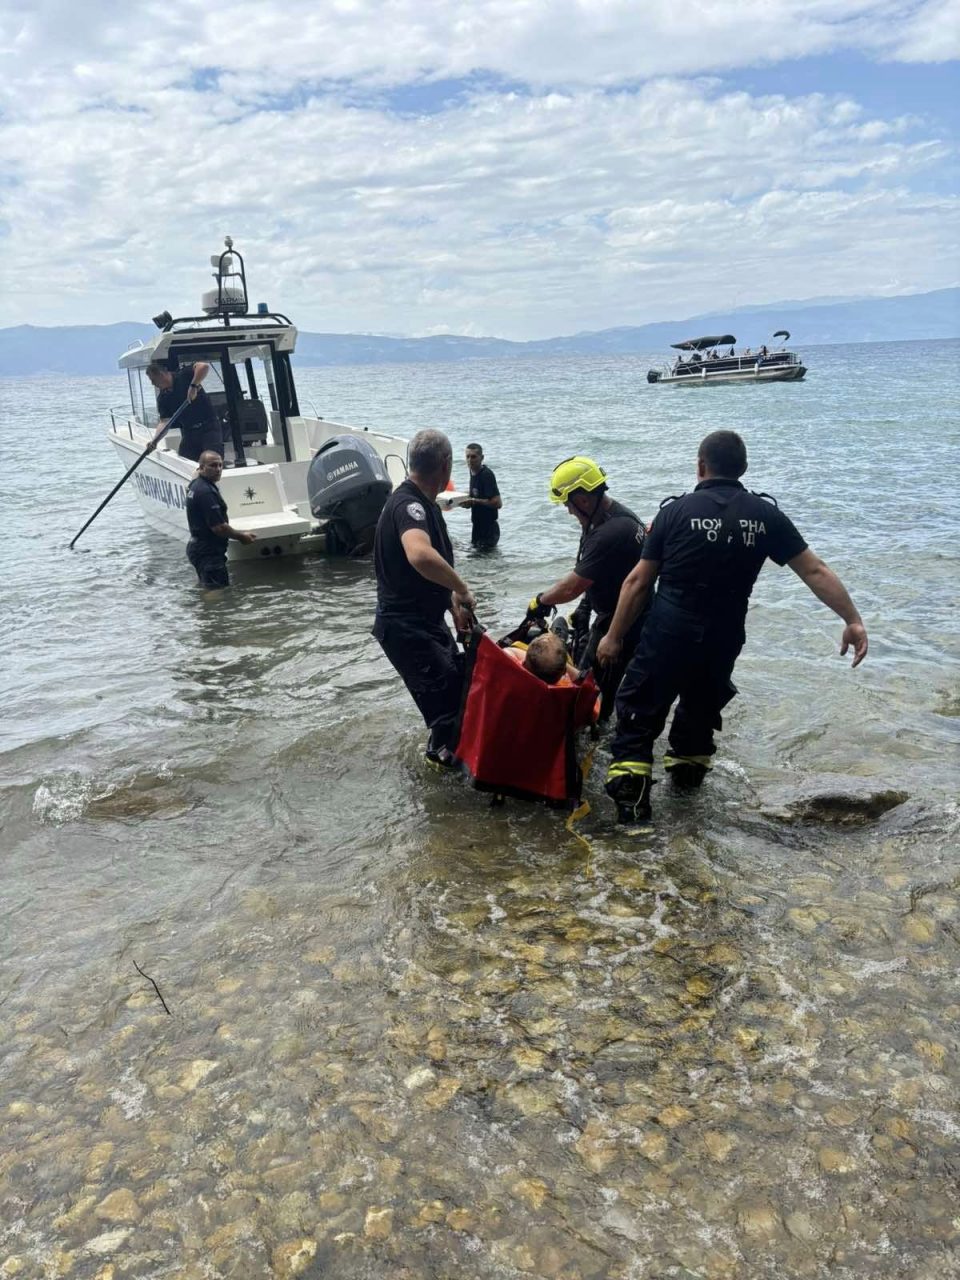 Уште една спасувачка акција во Охрид, повторно турист падна во непристапен терен